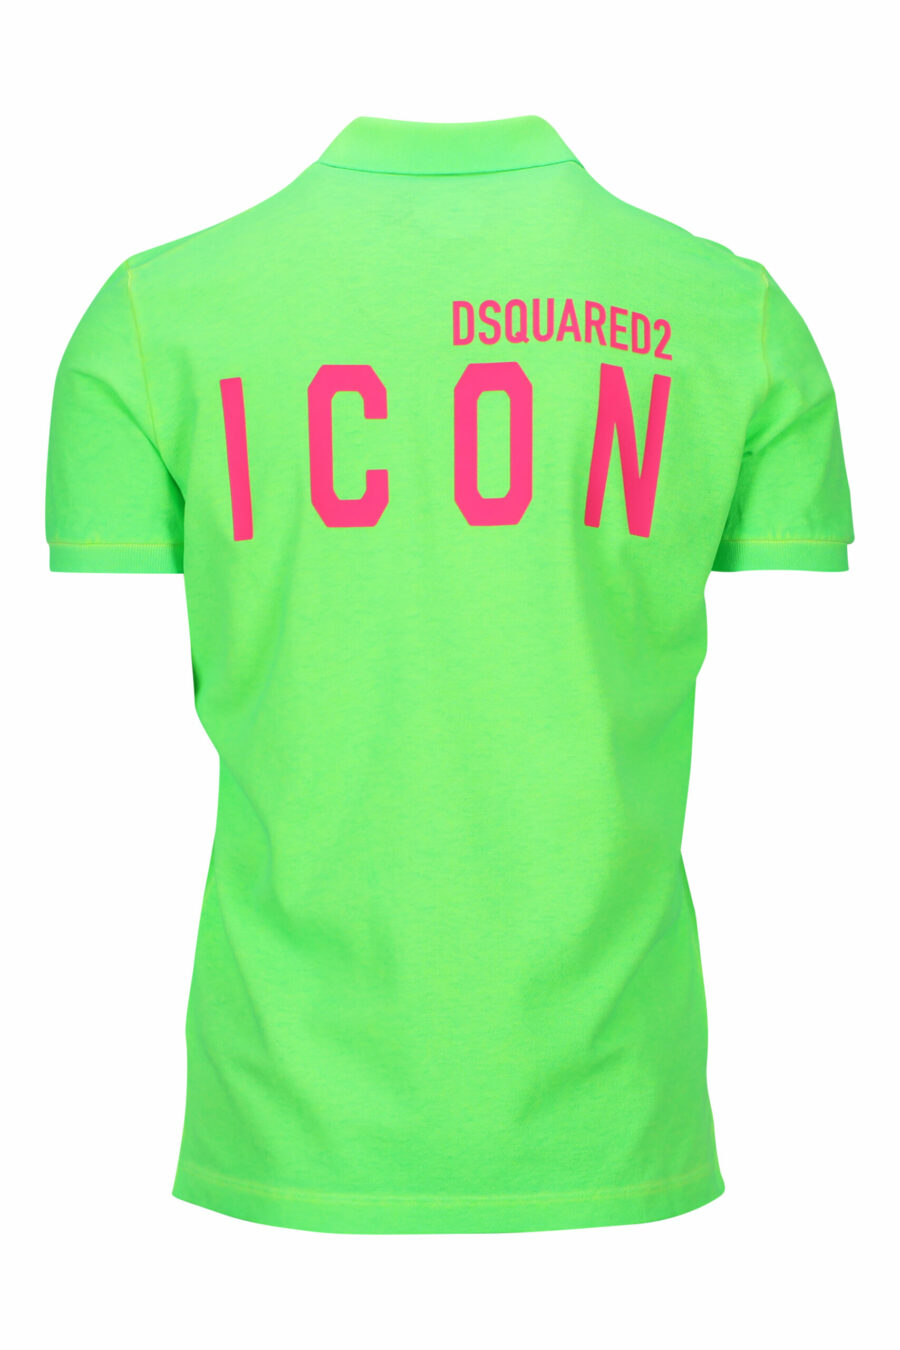 Neongrünes "Tennis Fit" Poloshirt mit "Icon" Logo auf dem Rücken - 8054148400781 1 skaliert